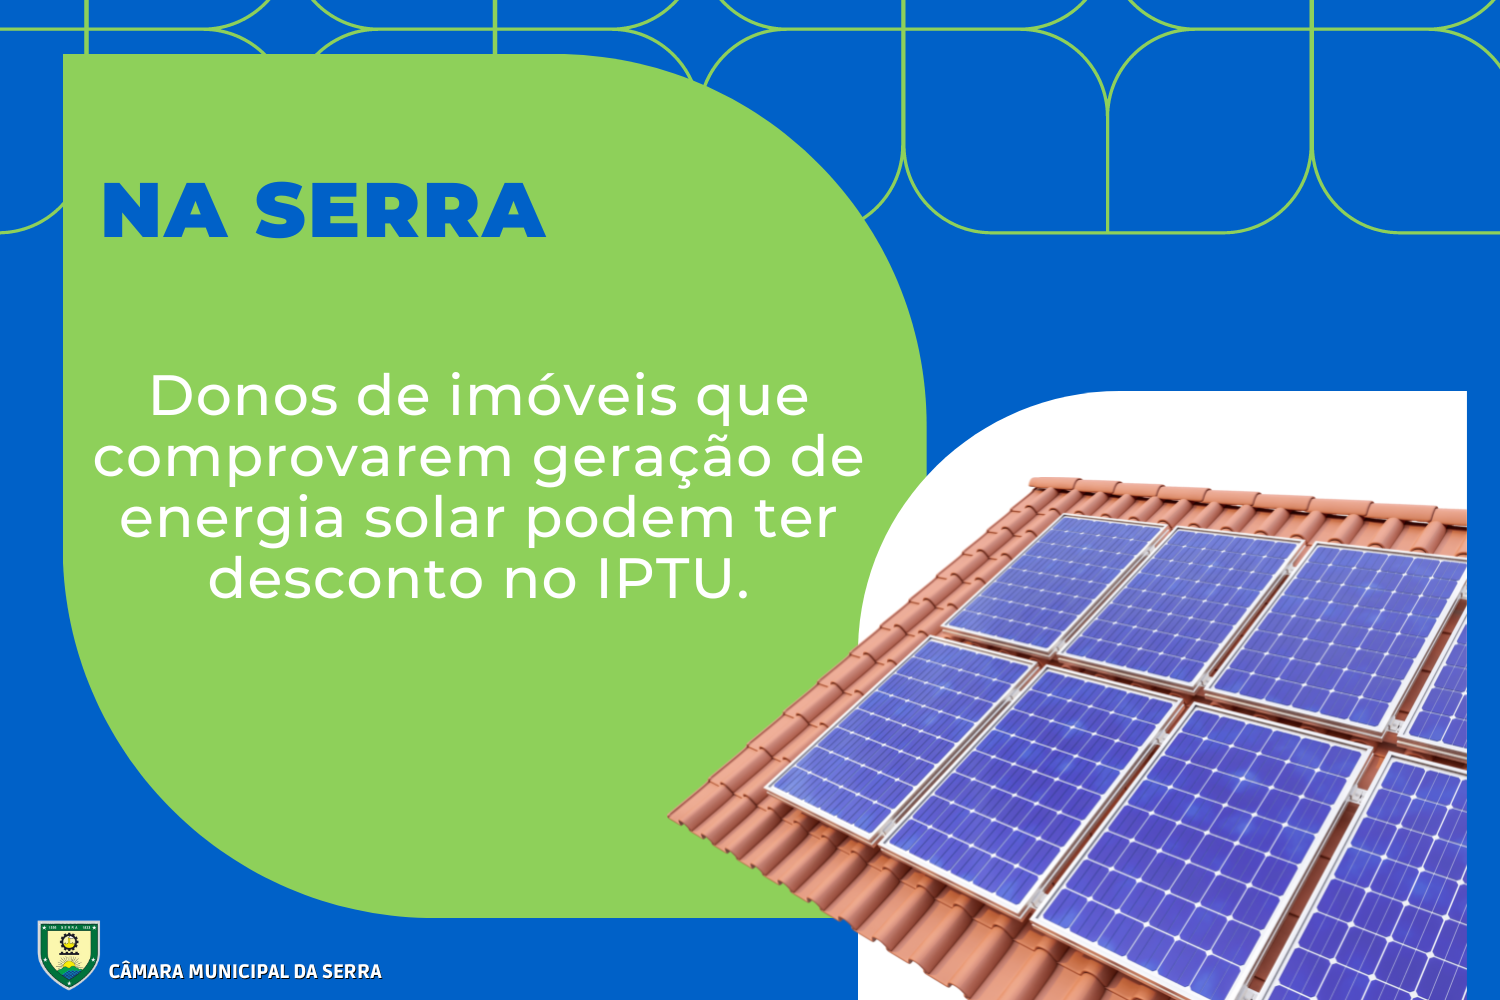 NOTÍCIA: Na Serra, donos de imóveis que comprovarem geração de energia solar podem ter desconto no IPTU.